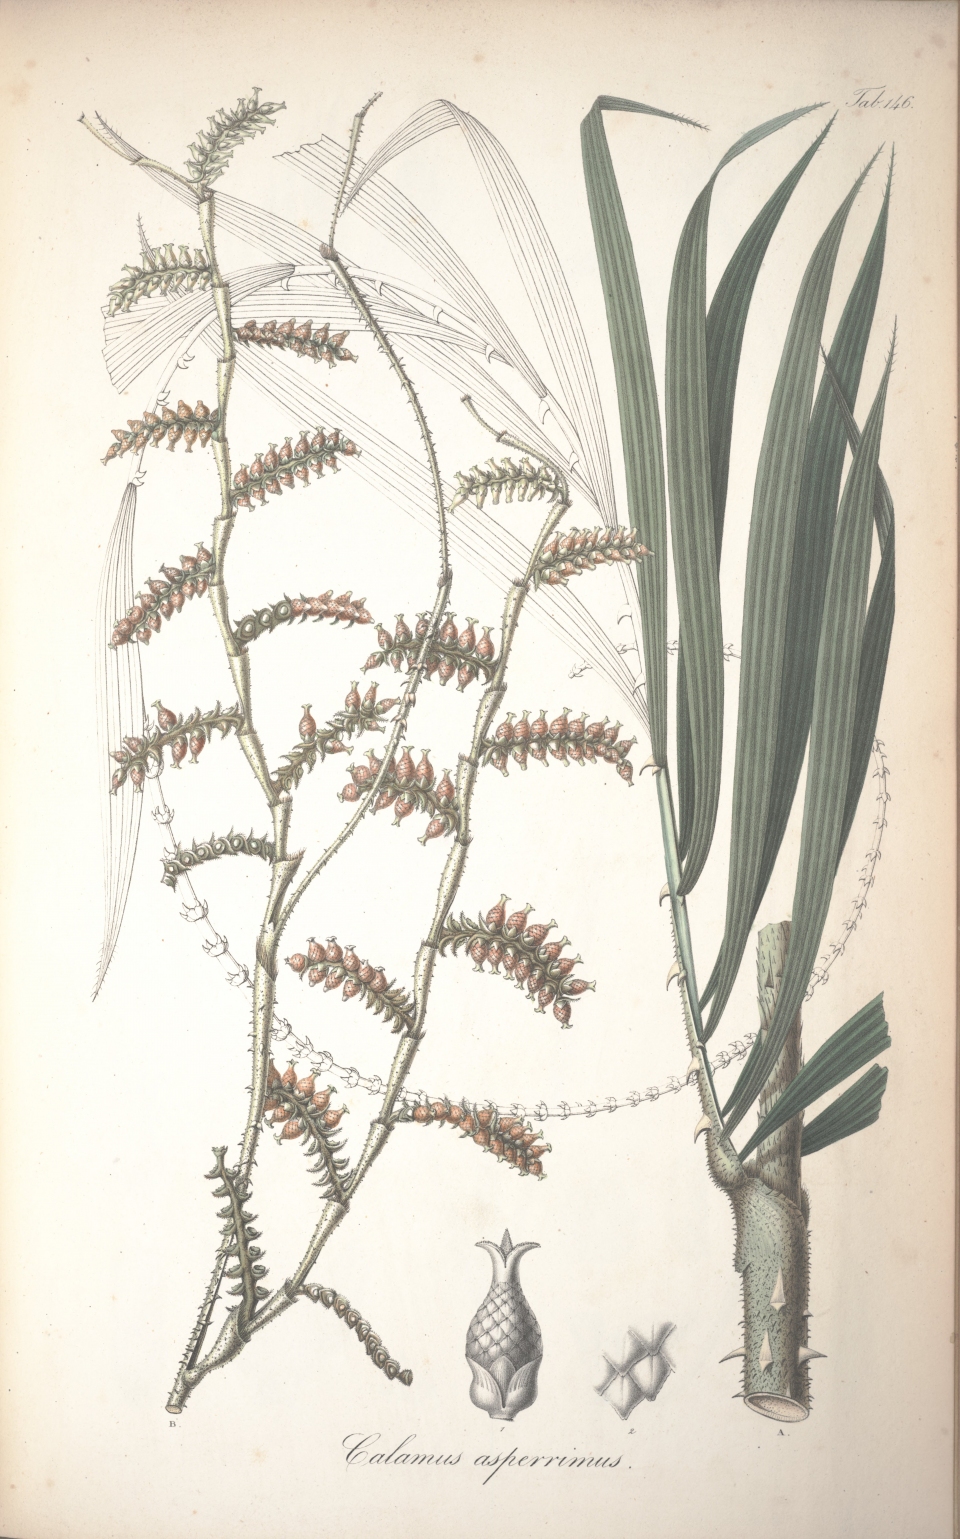 Calamus asperrimus